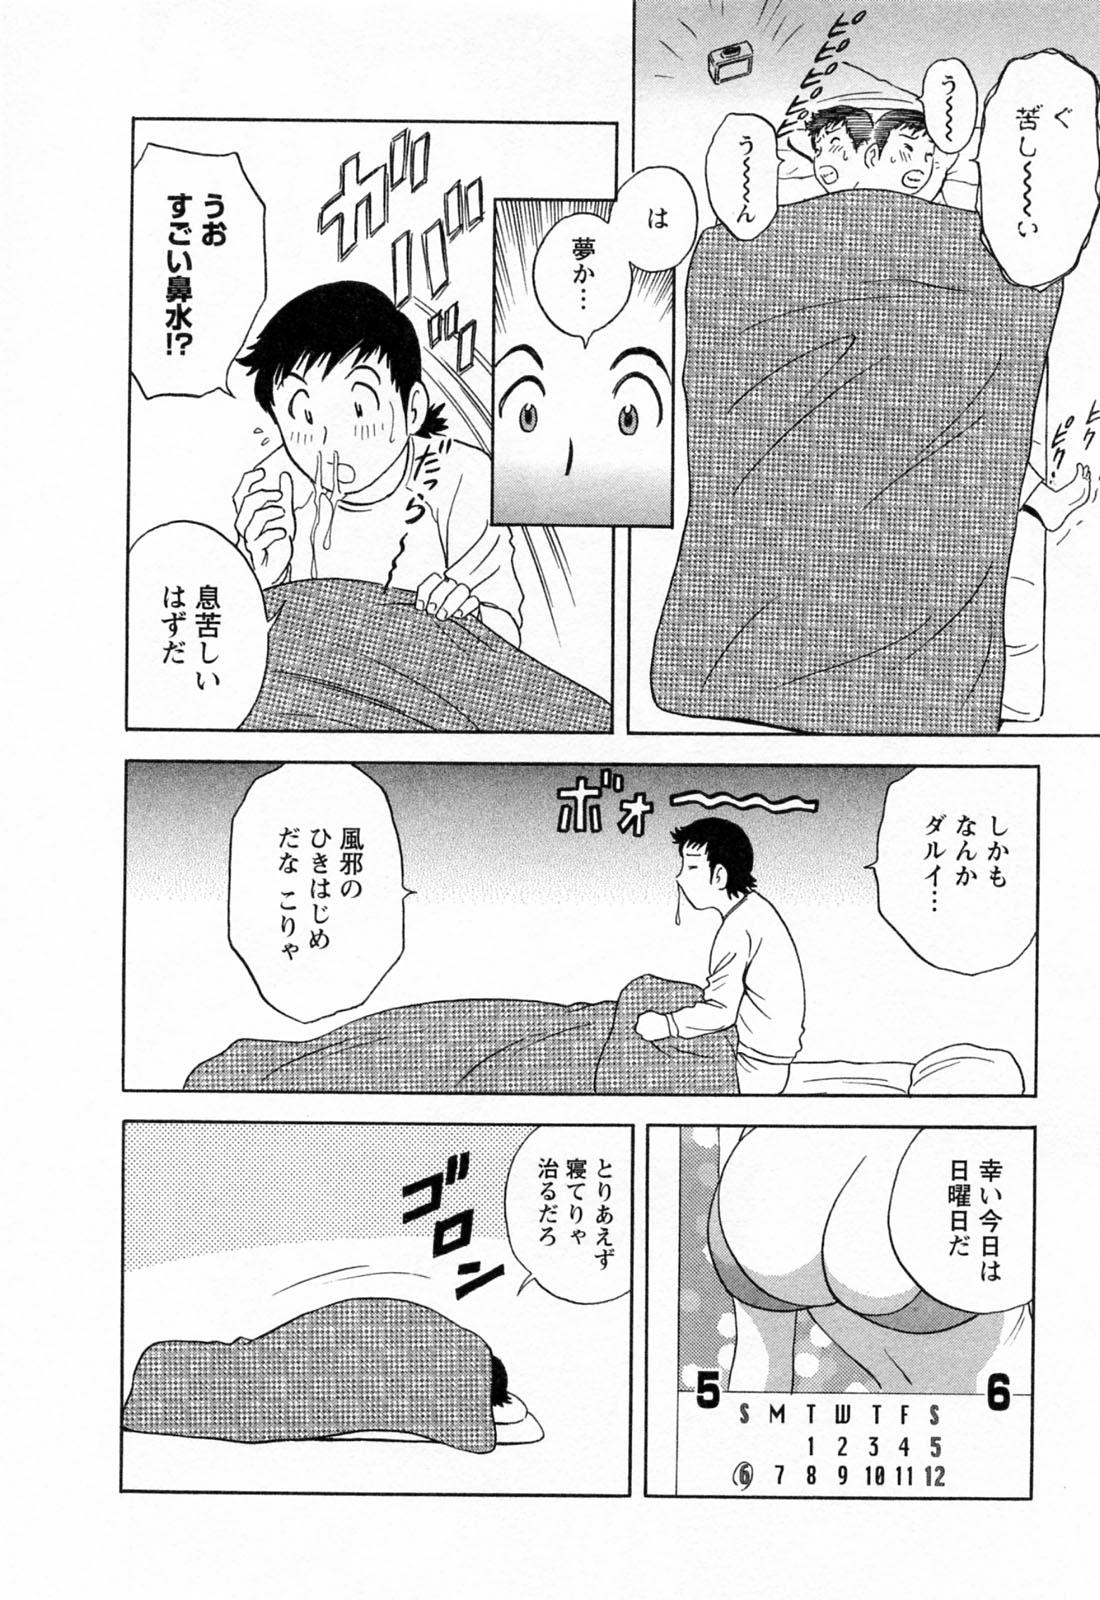 [Hidemaru] Mo-Retsu! Boin Sensei (Boing Boing Teacher) Vol.4 35